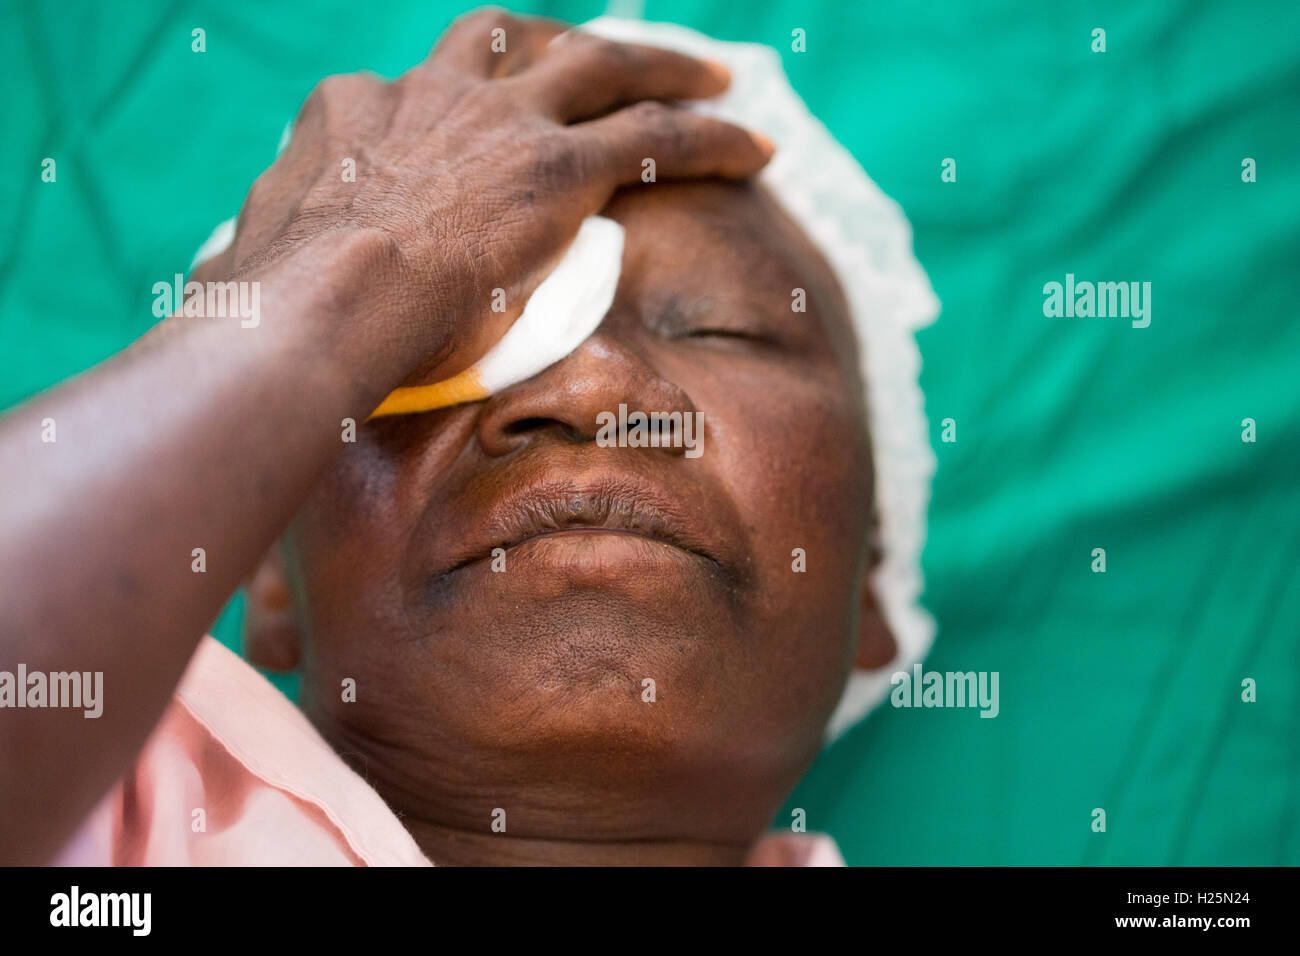 Ribaue Krankenhaus, Ribaue, Provinz Nampula, Mosambik, August 2015: Maria Albino ist für ihre ersten Katarakt-Operation zur Wiederherstellung ihrer Blick bereit.  Foto: Mike Goldwater Stockfoto